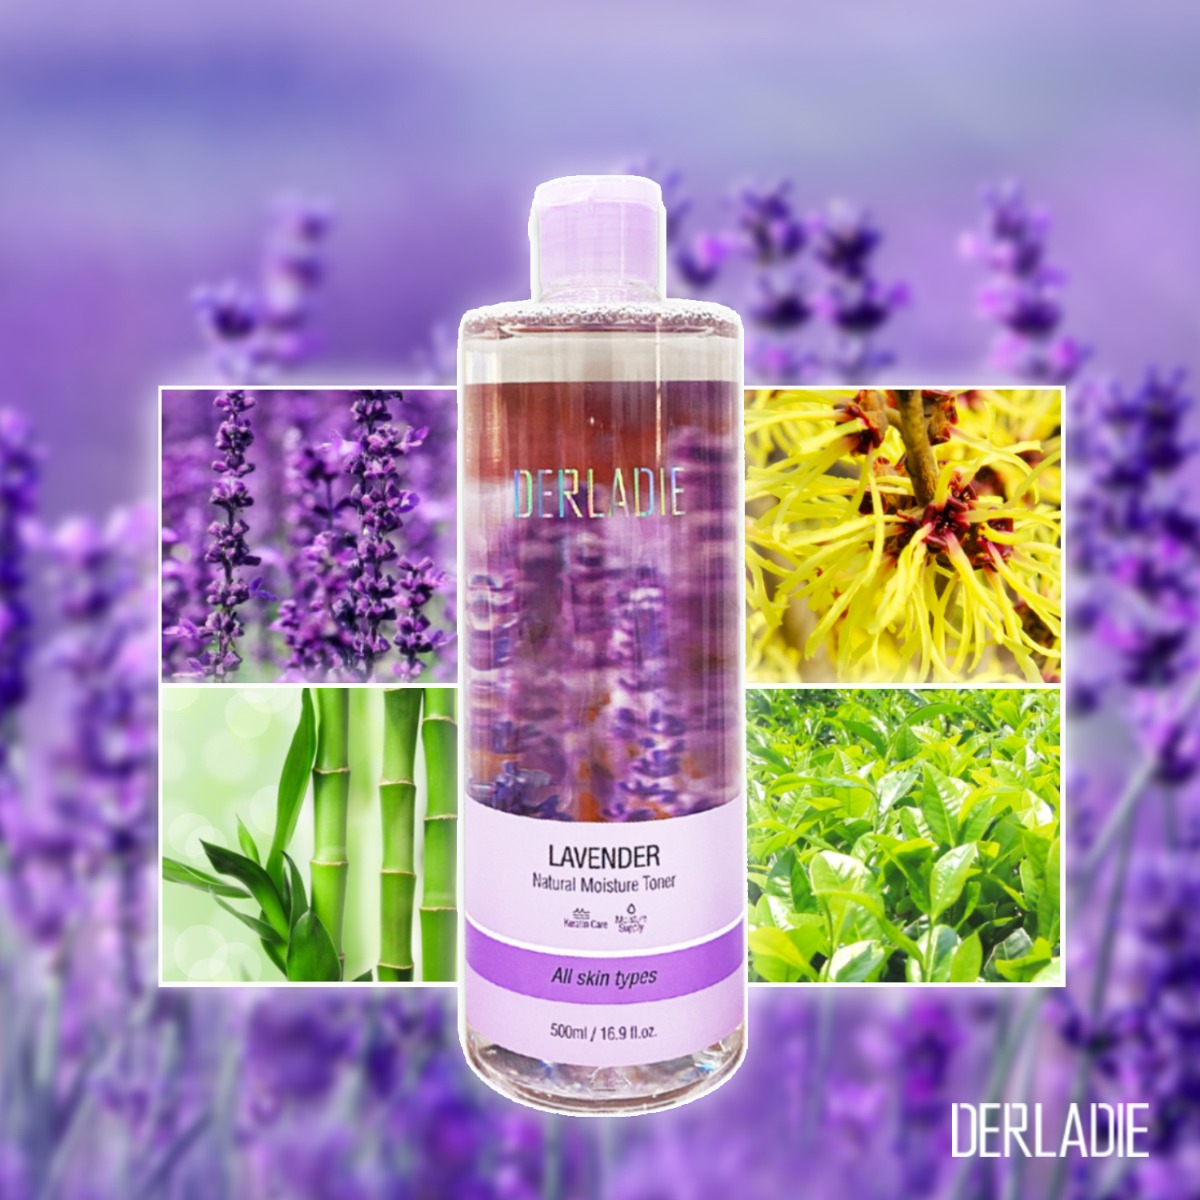 Nước Hoa Hồng Derladie Lavender Natural Moisture Toner được chiết xuất từ các thành phần thiên nhiên an toàn và lành tính cho da